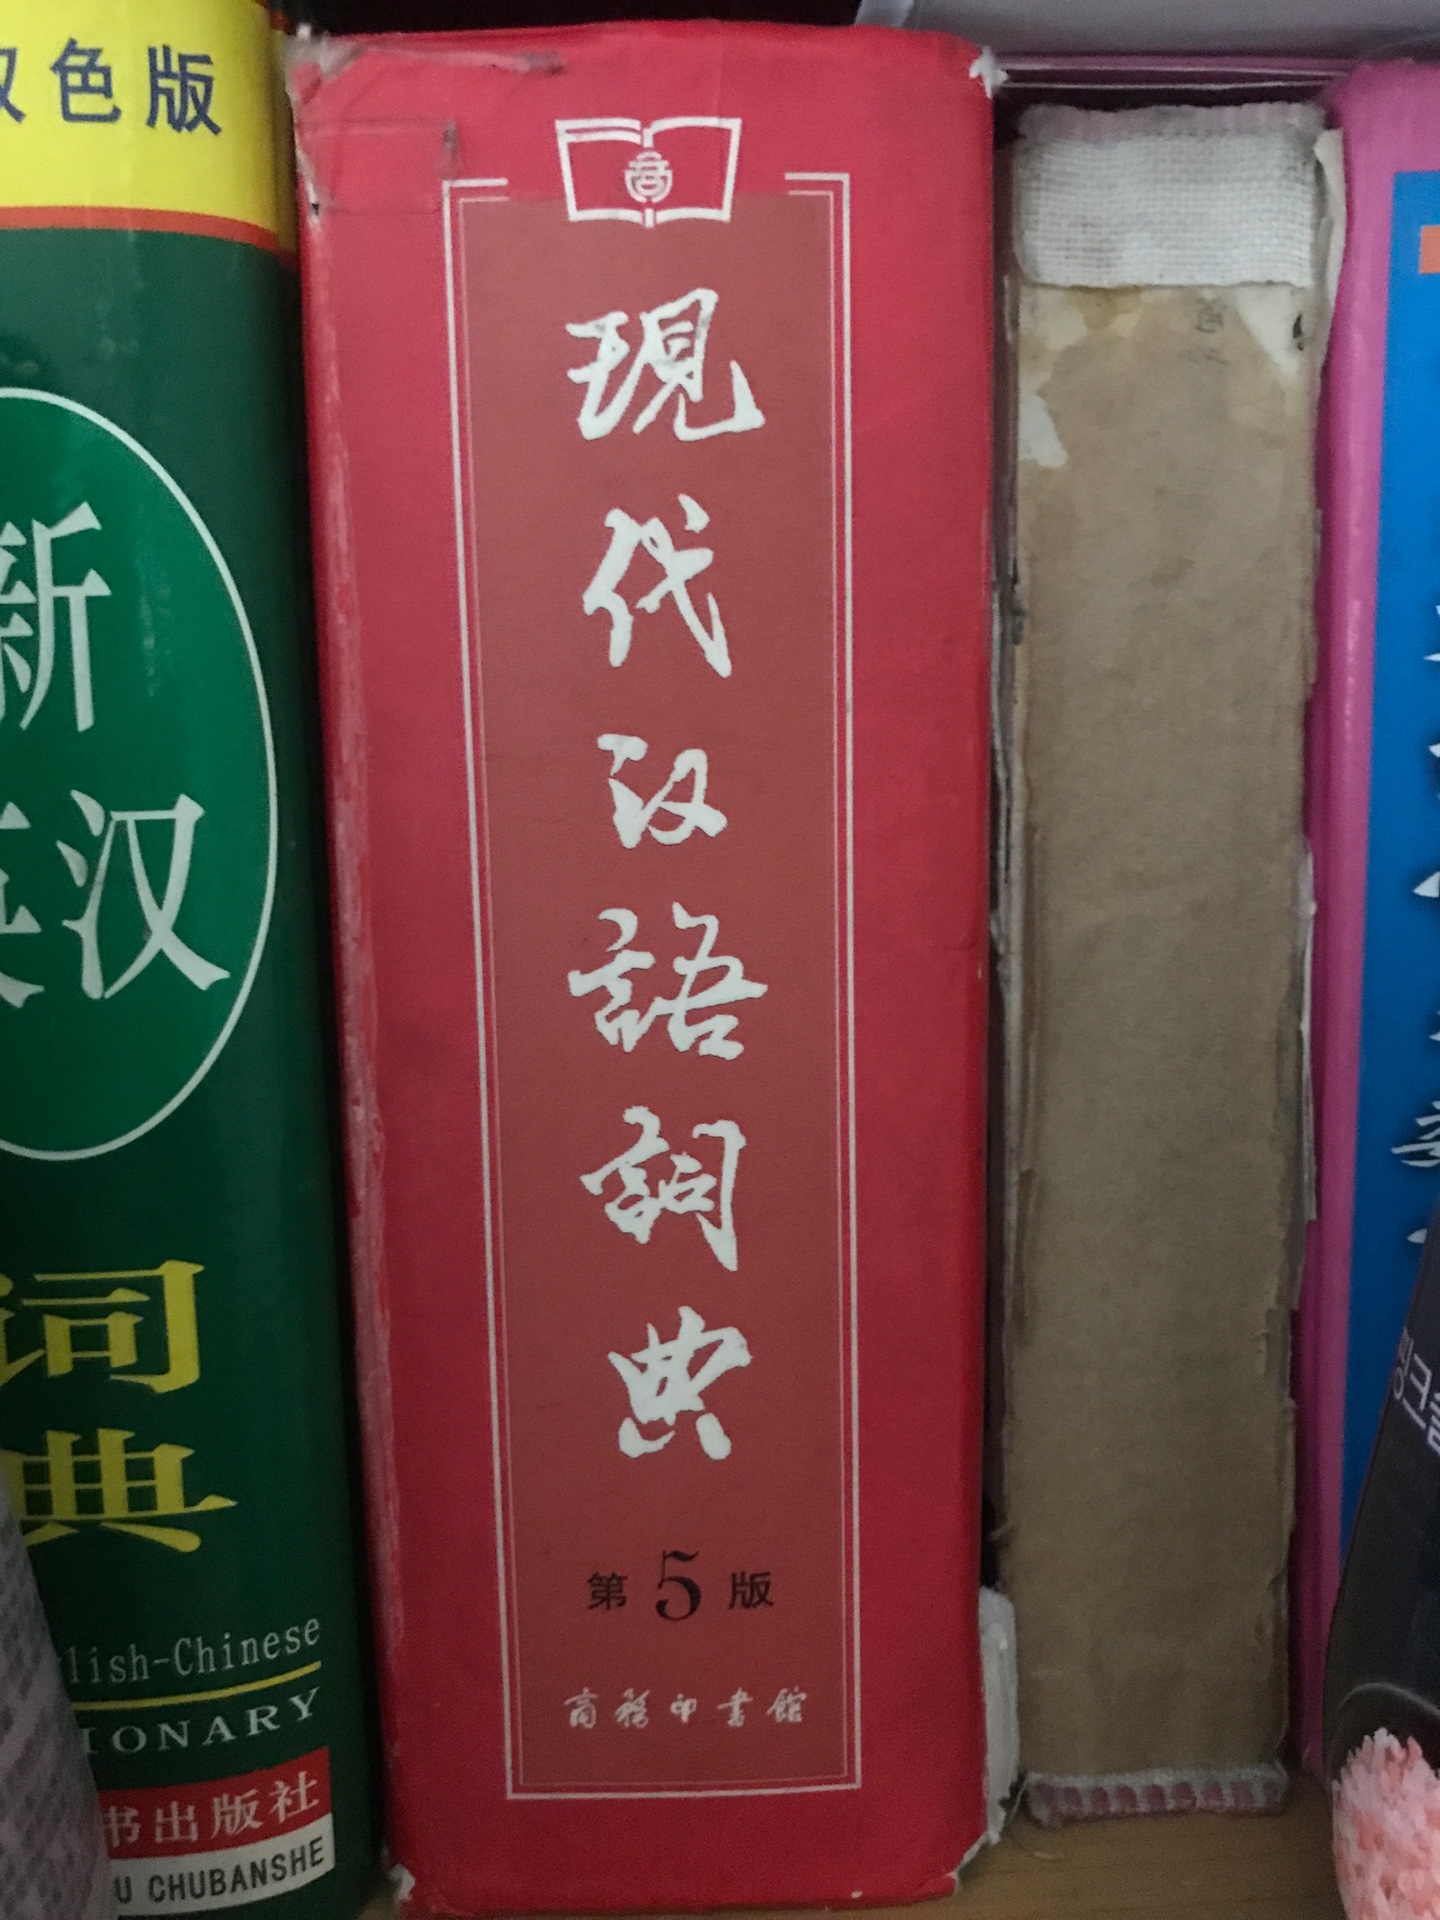 包装完好，没用破损。但是和我之前新华书店买的现代汉语词典相比，薄了很多。